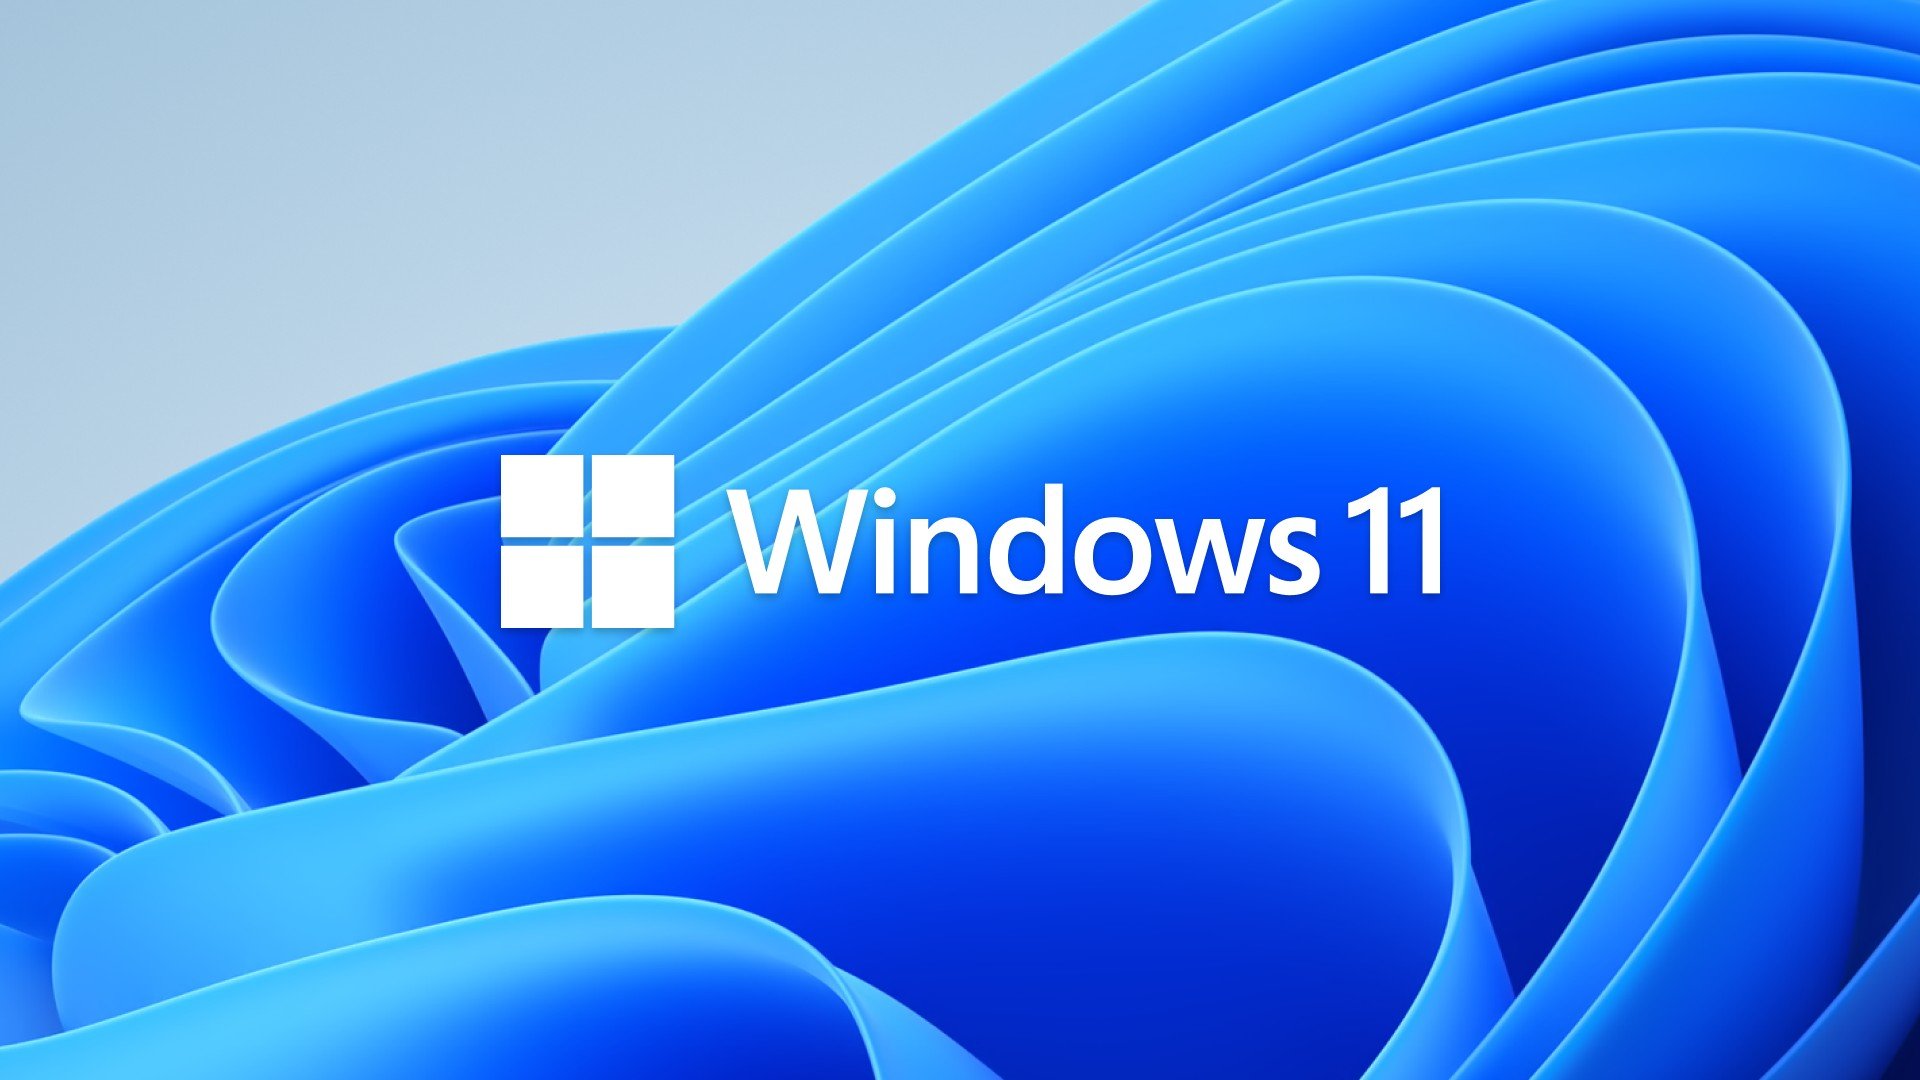 windows-11-home-kurulumu-icin-internet-baglantisi-zorunlu-olacak-technopat.jpg